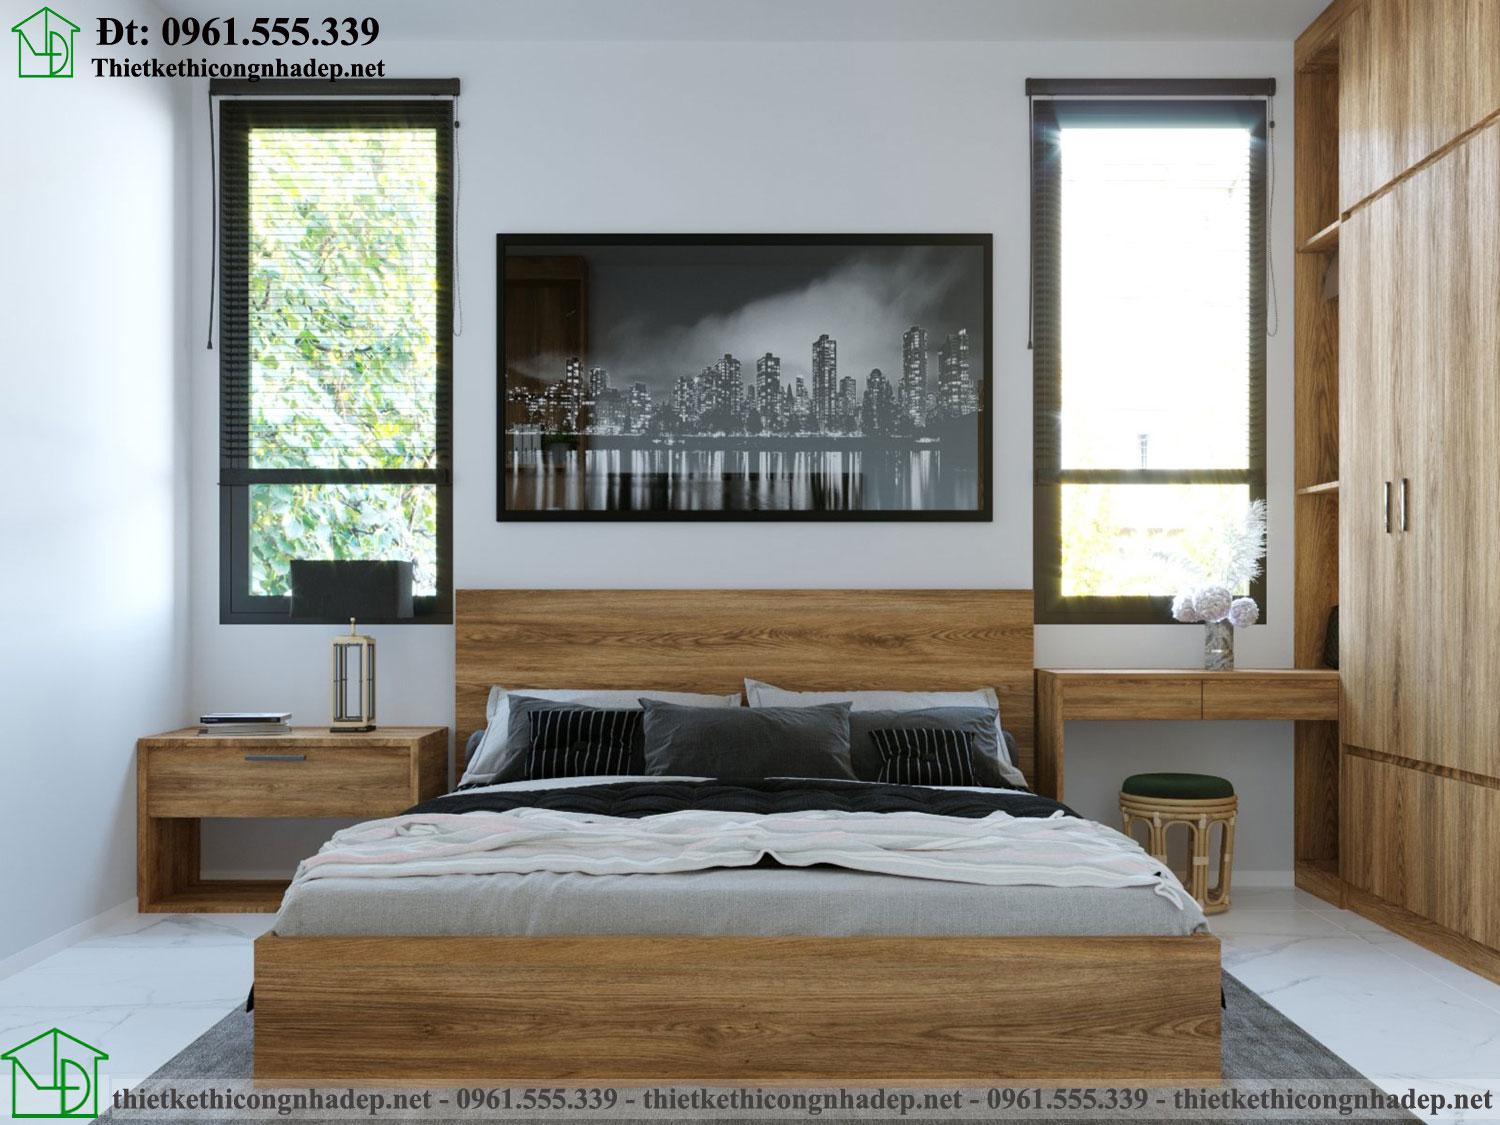 Thiết kế thi công nội thất phòng ngủ nhà cấp 4 đẹp NDNC4178